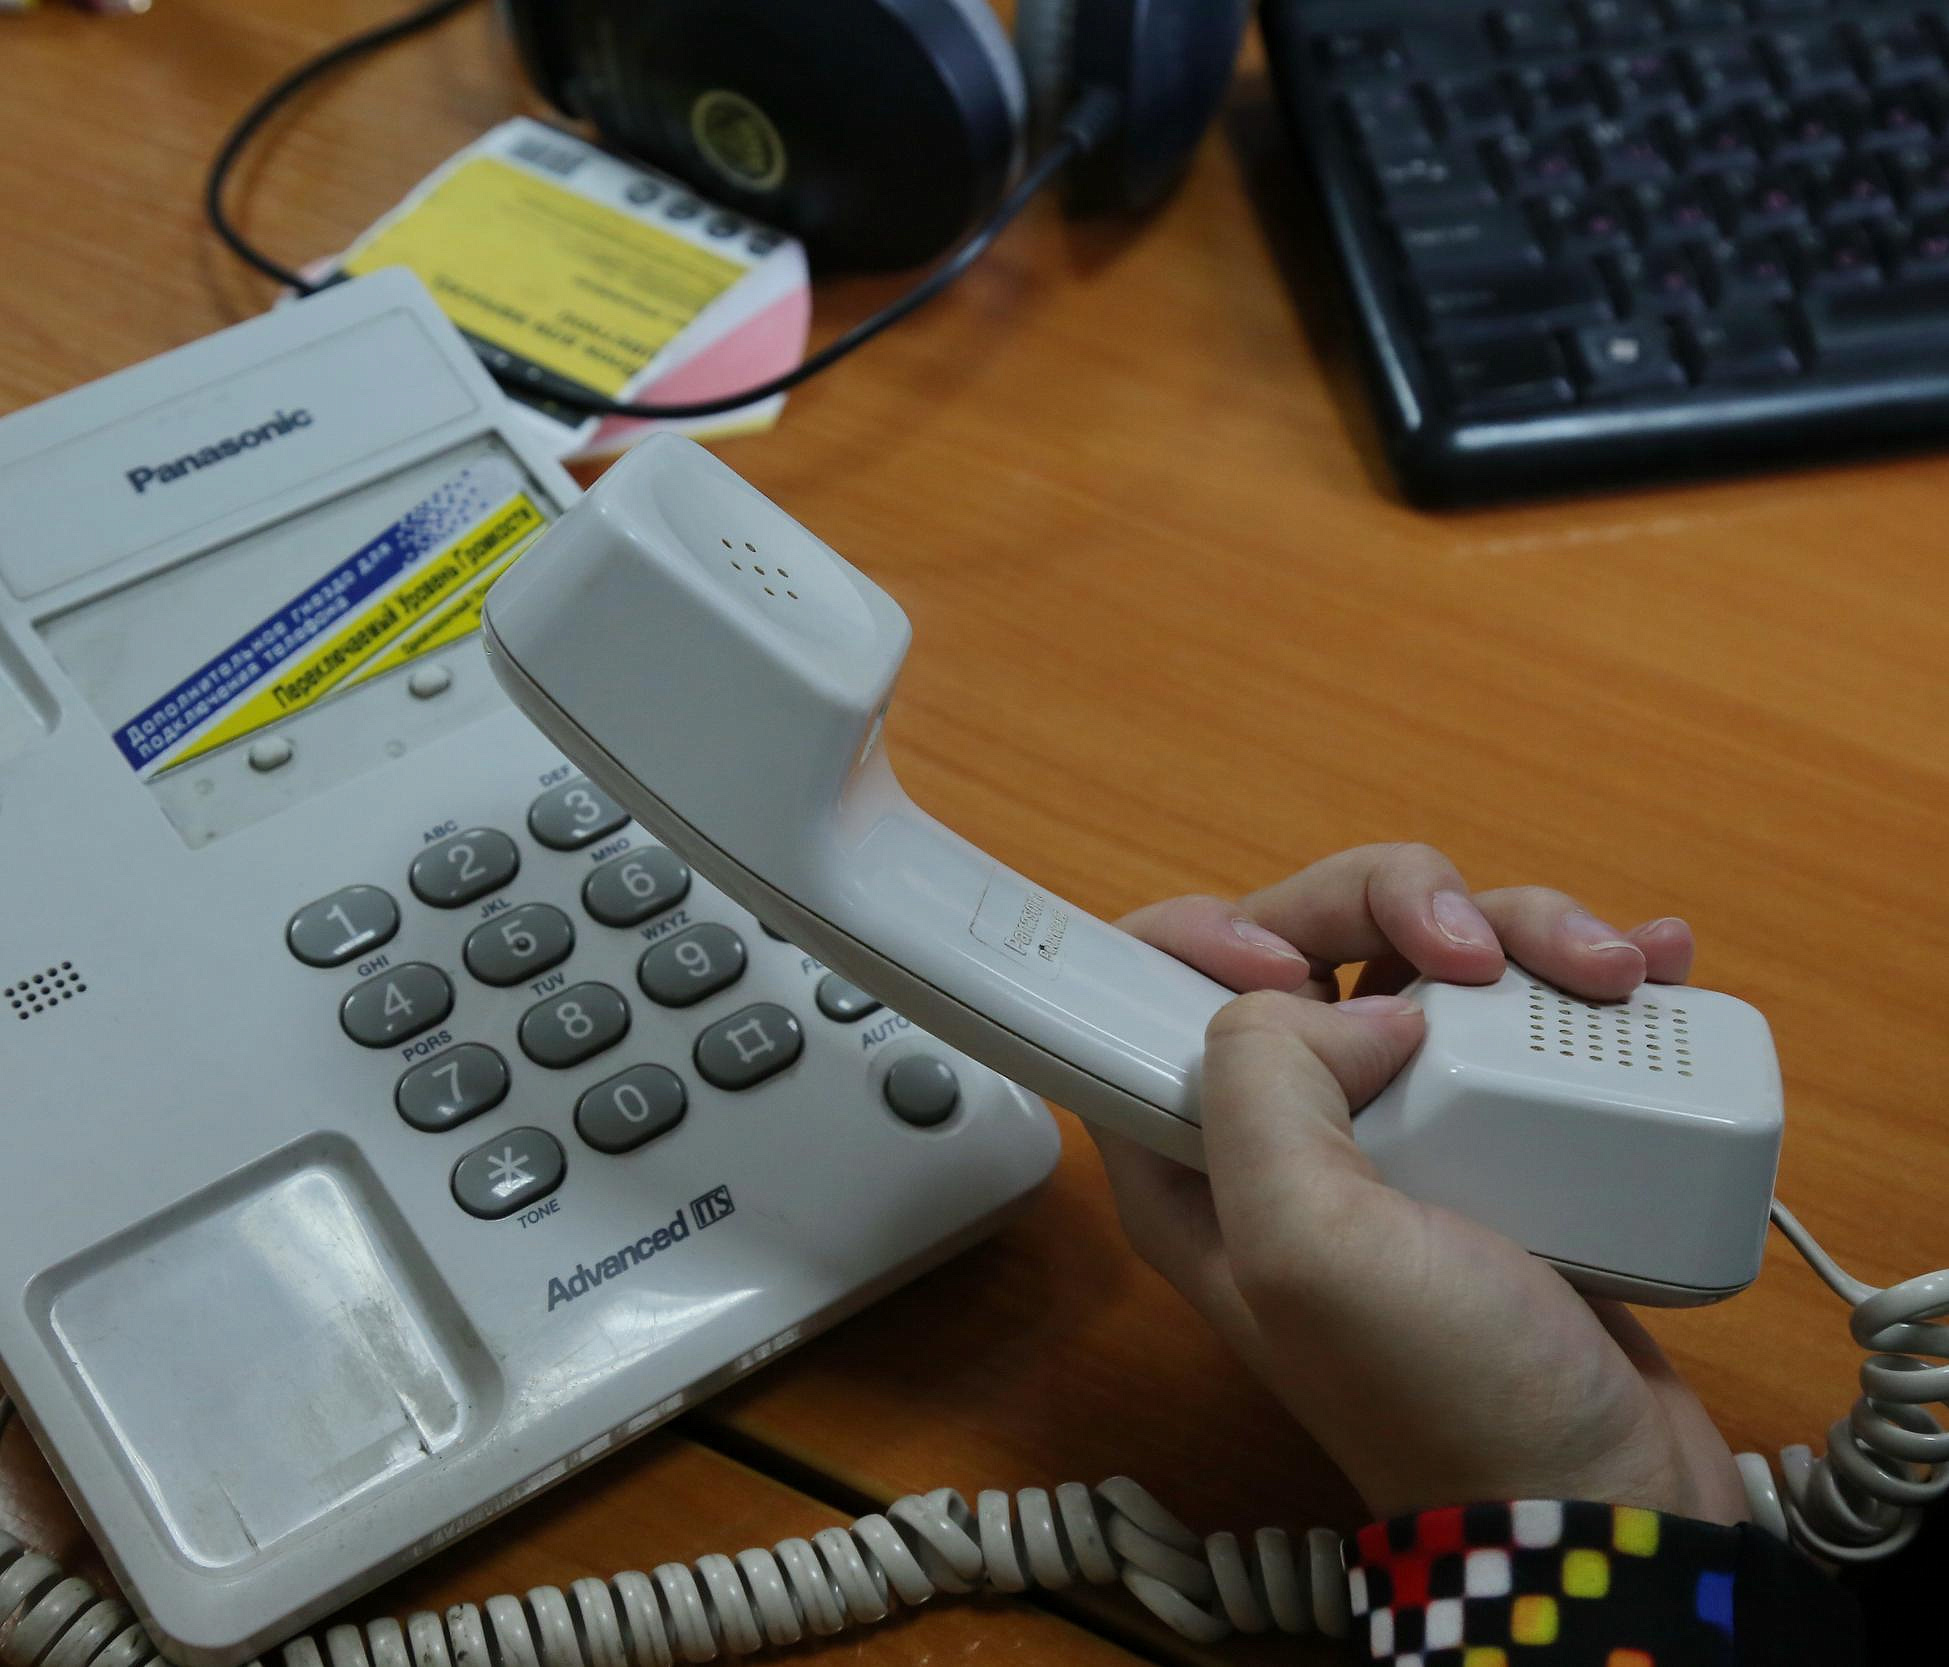 Плата за социальный наём в Новосибирске — горячий телефон